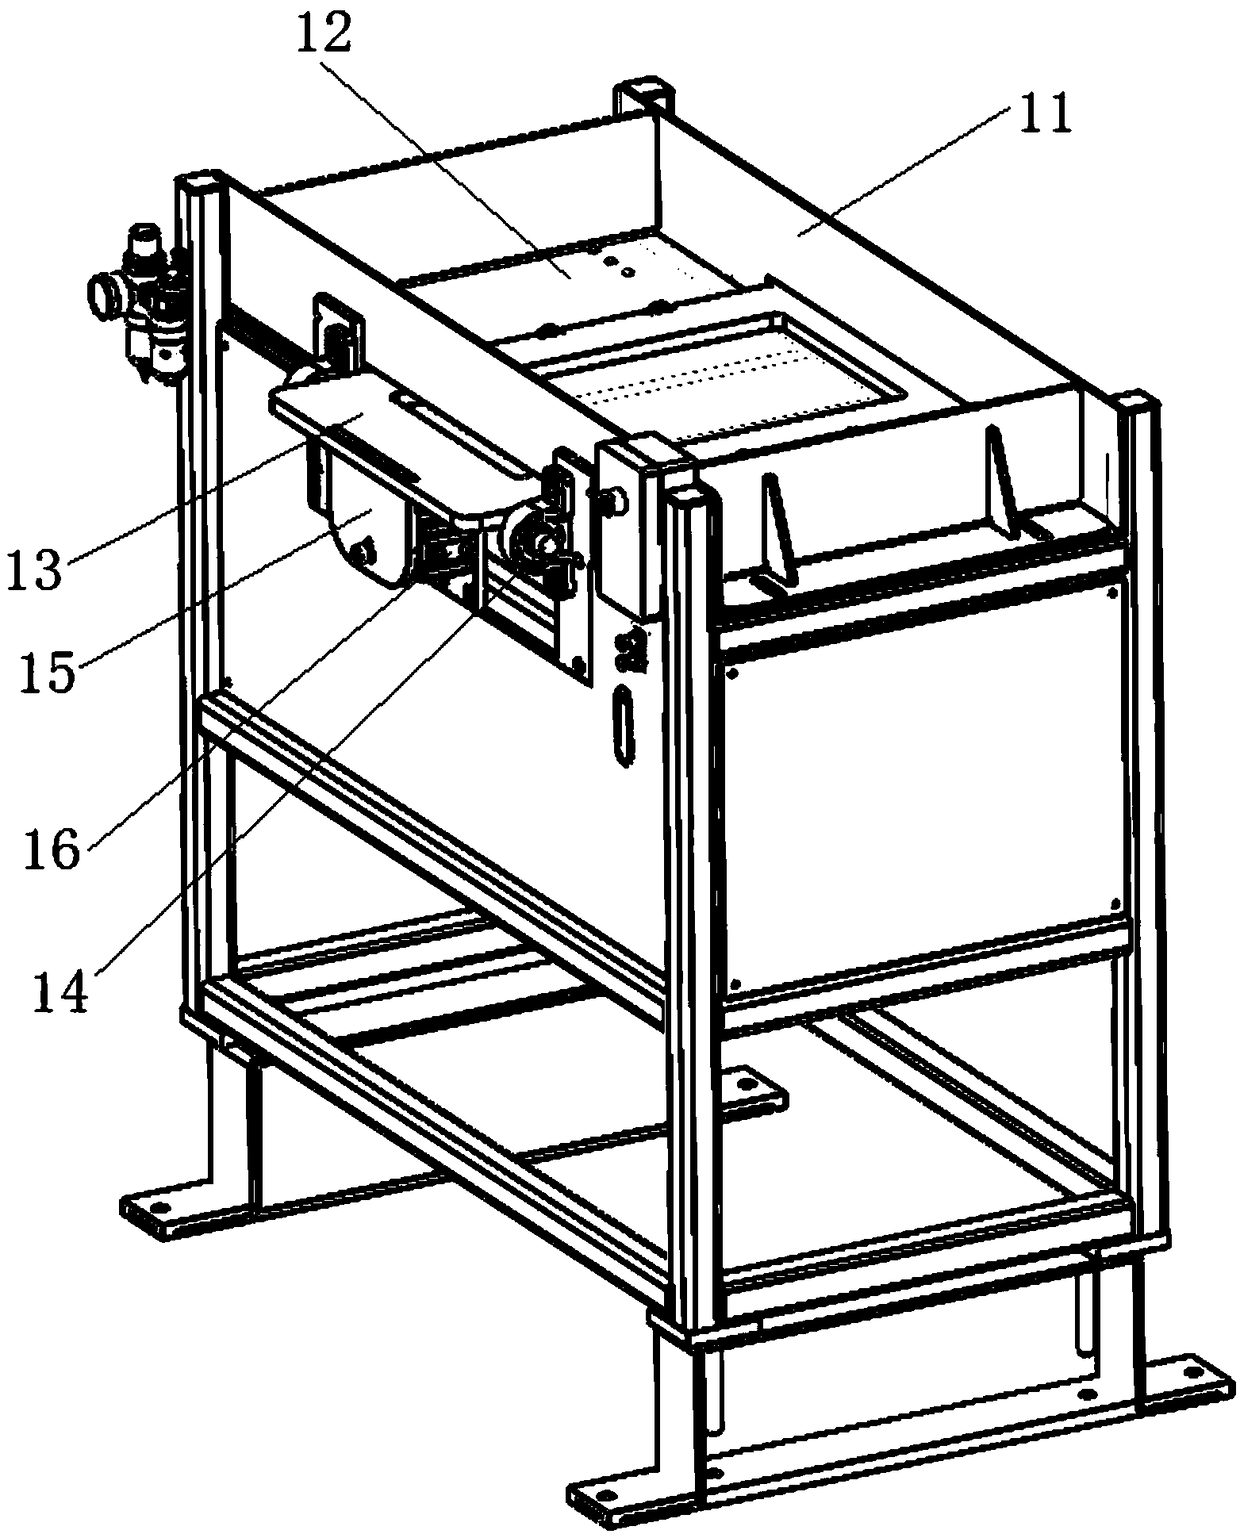 Material swinging mechanism